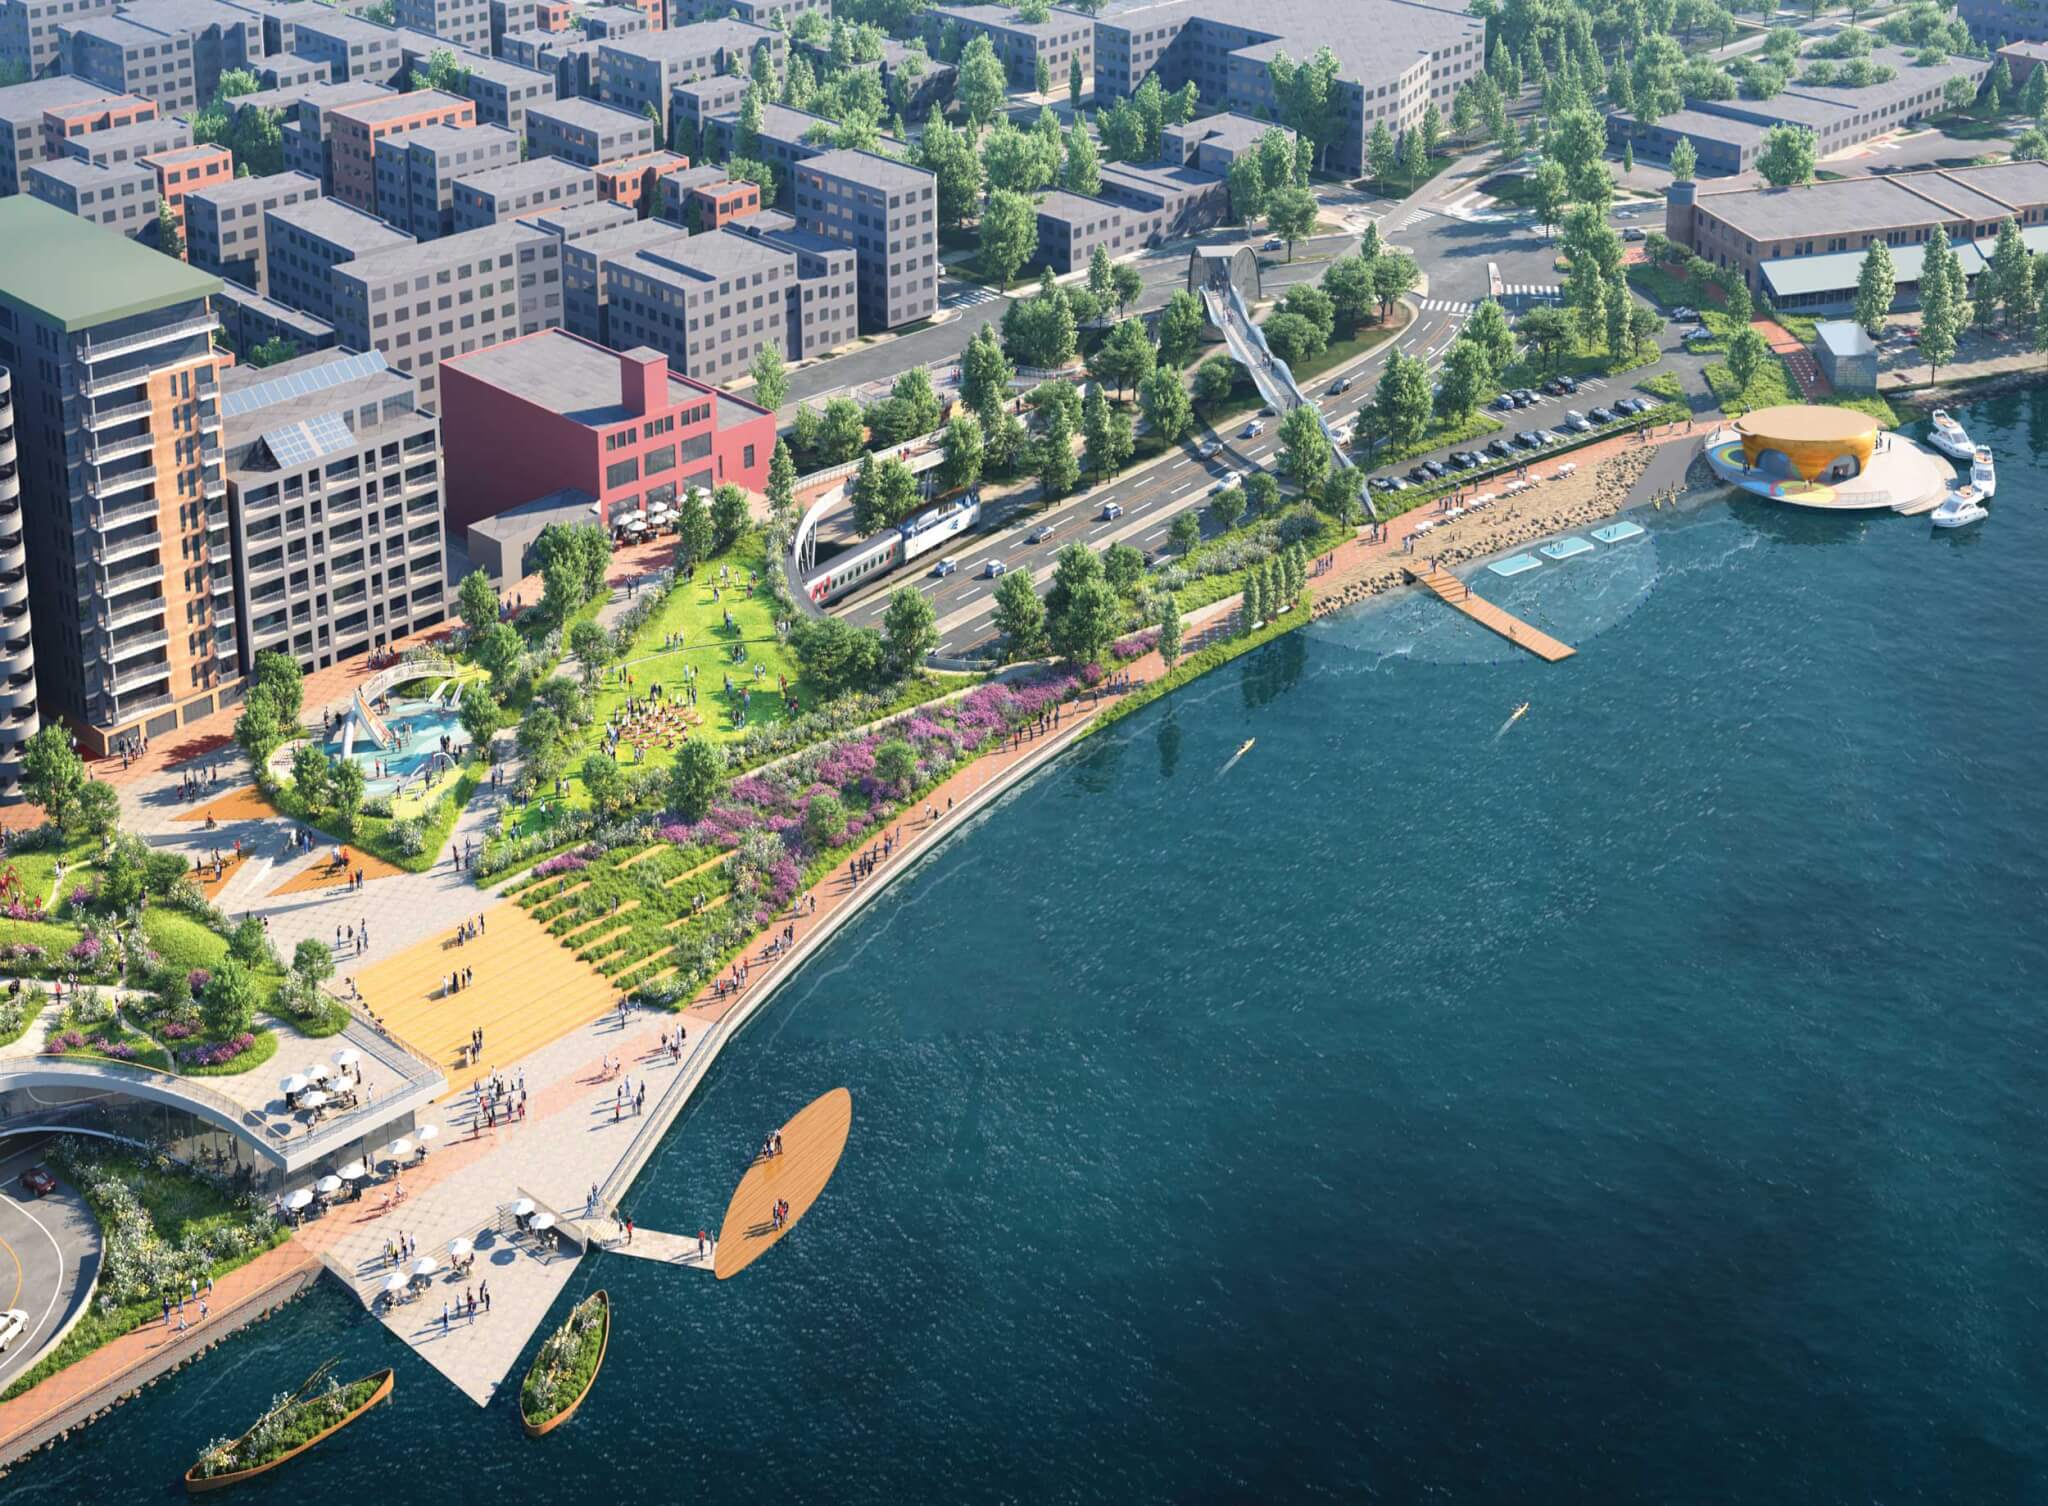 Landscape firms unveil plans to reimagine Lake Monona waterfront